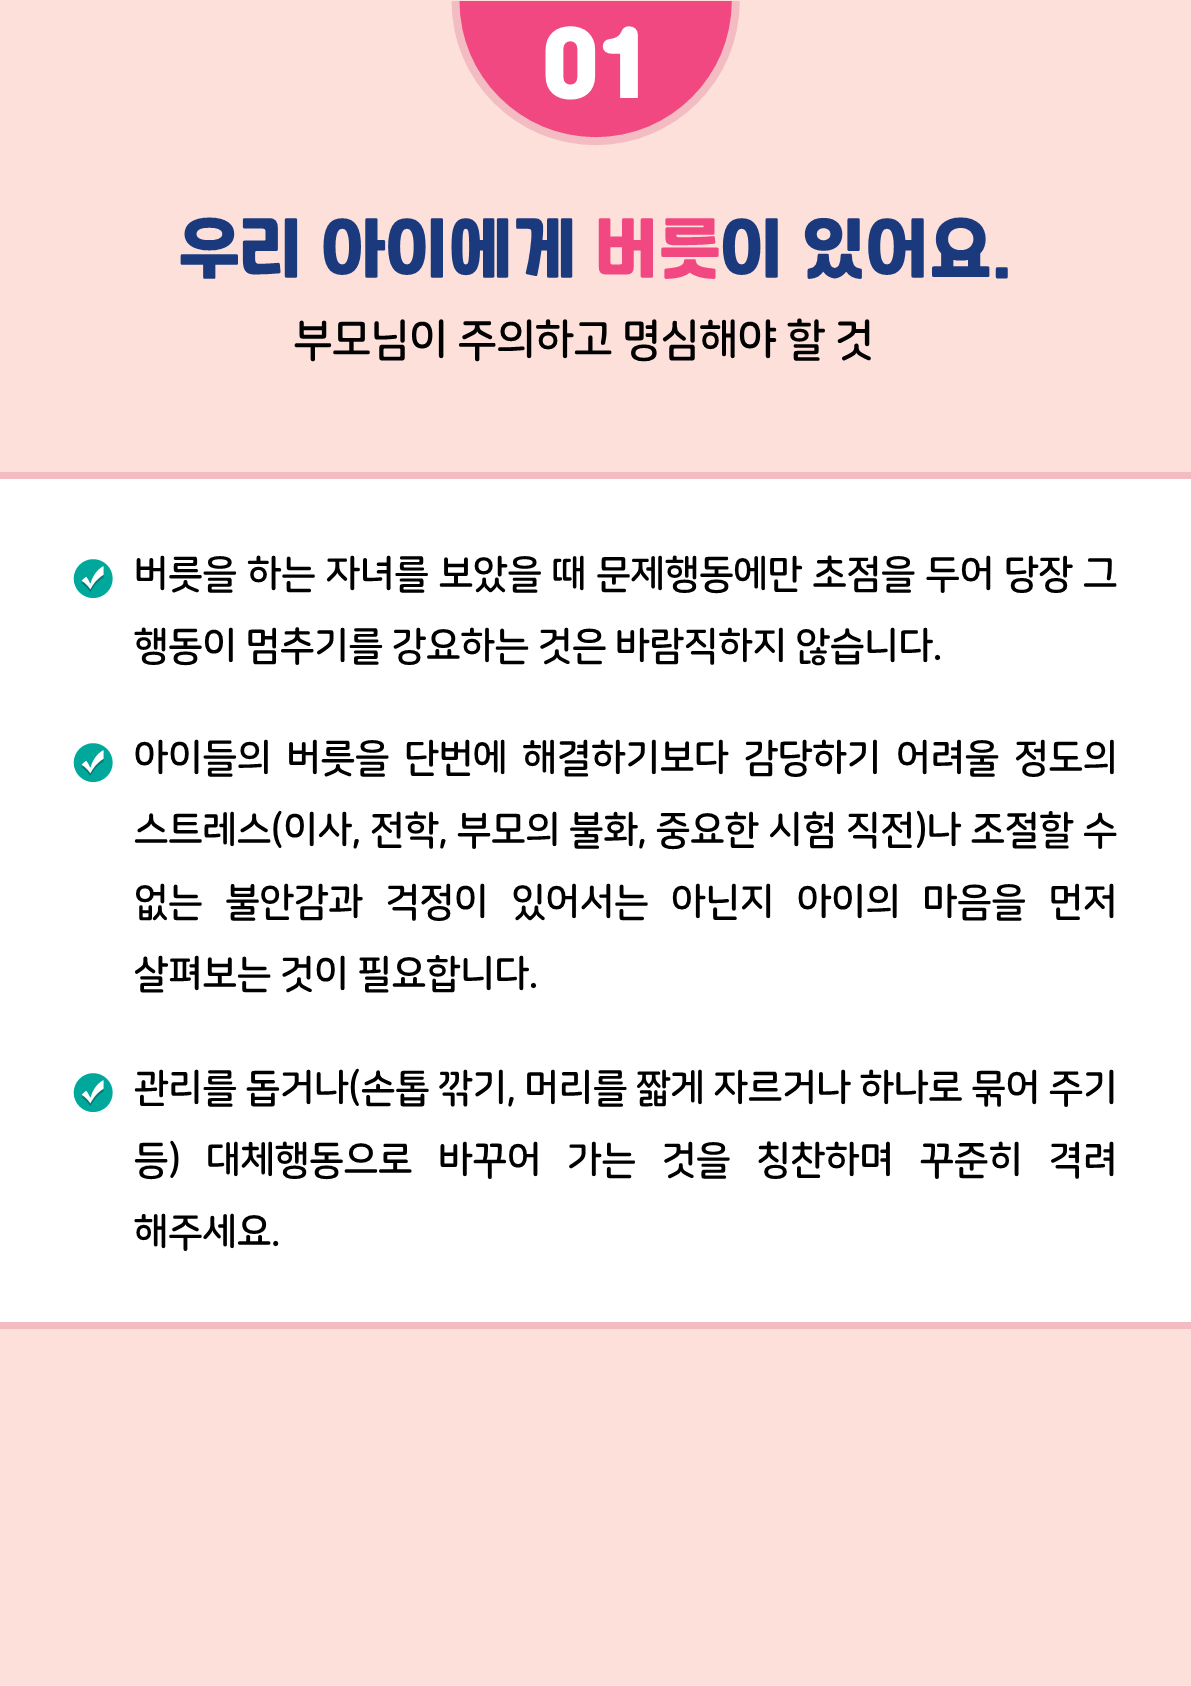 [붙임2]카드뉴스 제2021-5_틱장애(초등학부모용)_4.png